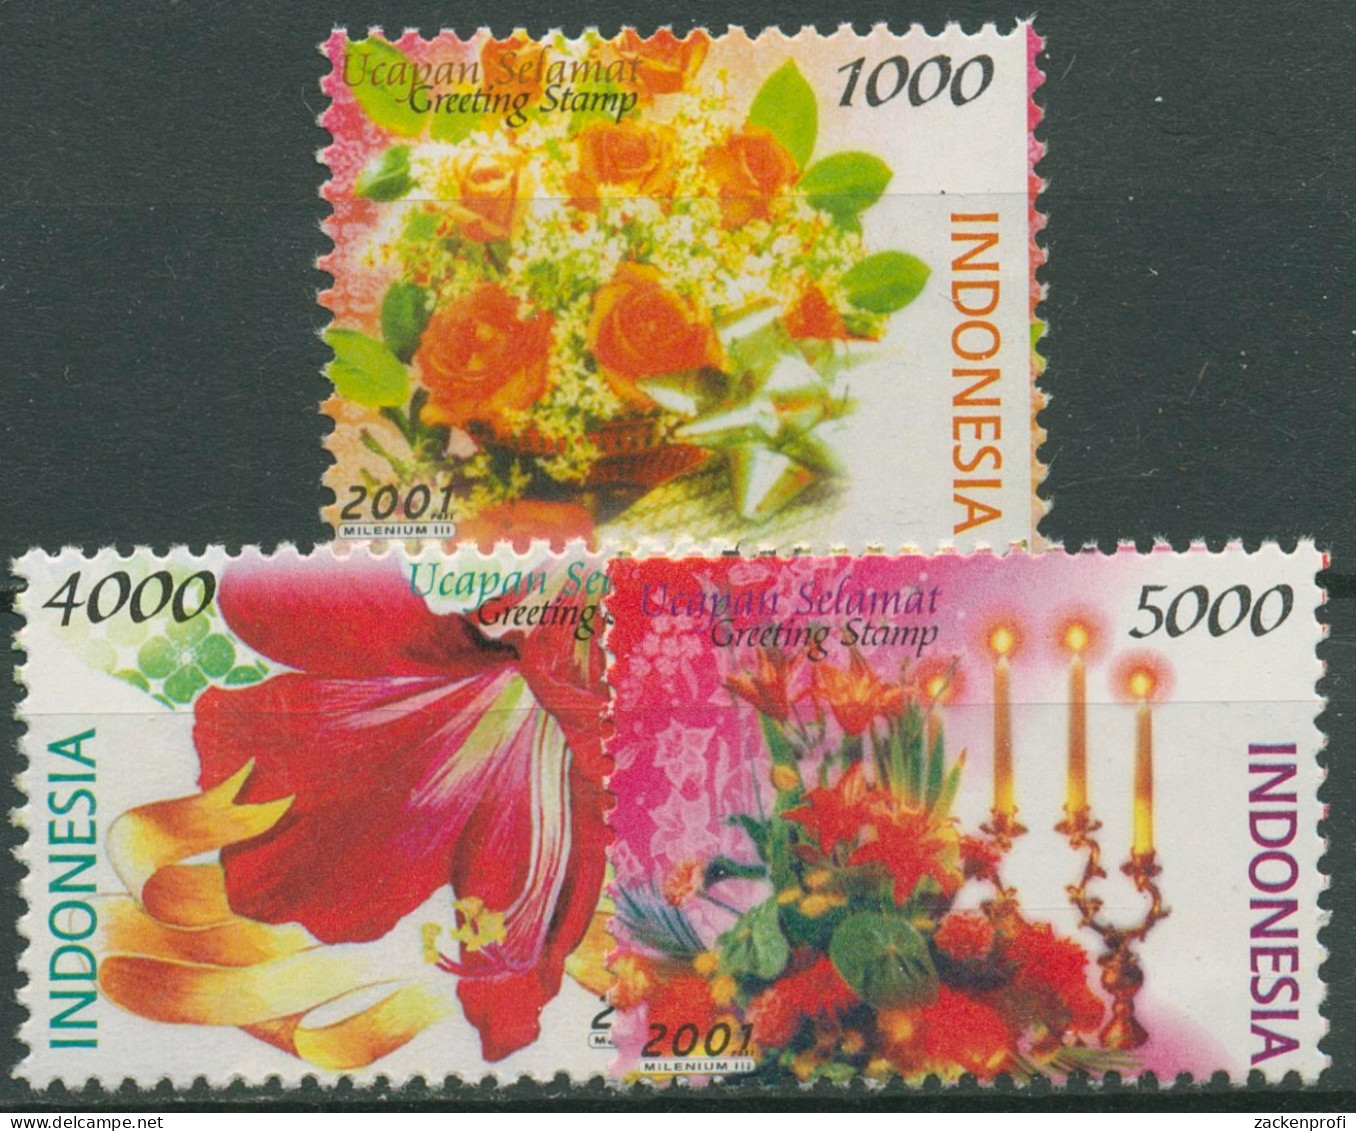 Indonesien 2001 Grußmarken Blumen Rosen Amaryllis 2103+2106/07 Postfrisch - Indonesia